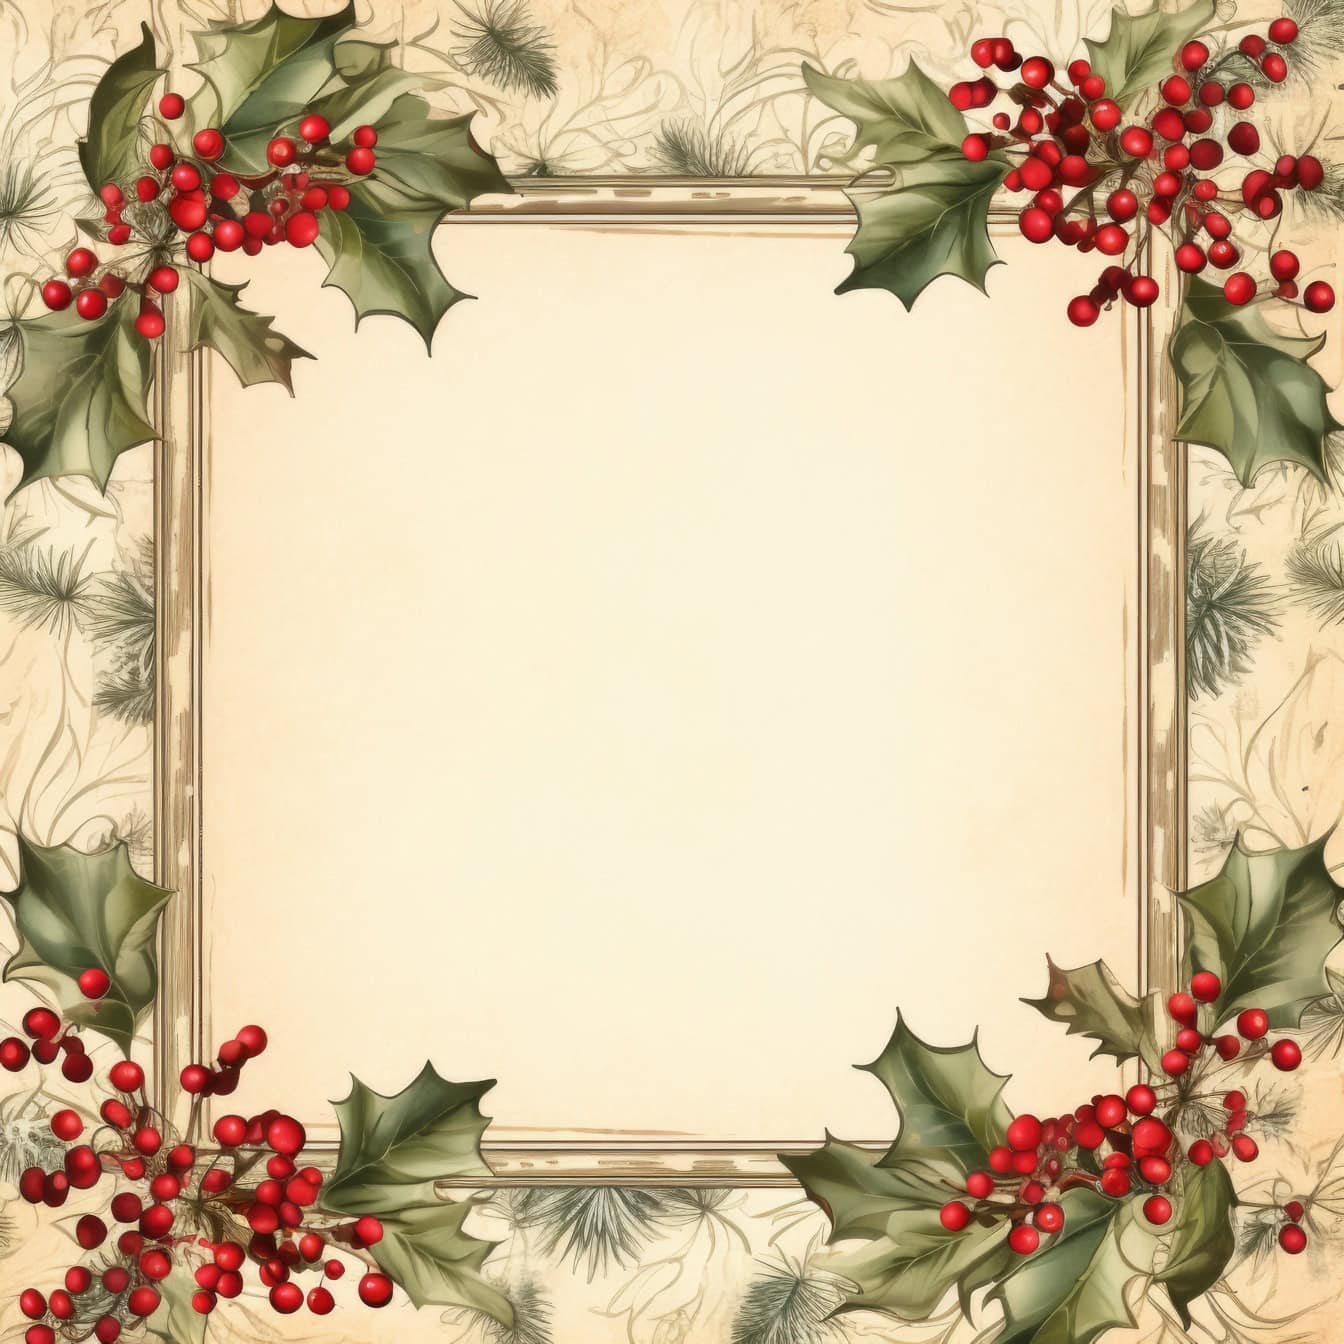 เทมเพลตการ์ดอวยพรคริสต์มาสในสไตล์เก่าพร้อมกรอบสี่เหลี่ยมจัตุรัสพร้อมผลเบอร์รี่สีแดงและใบไม้